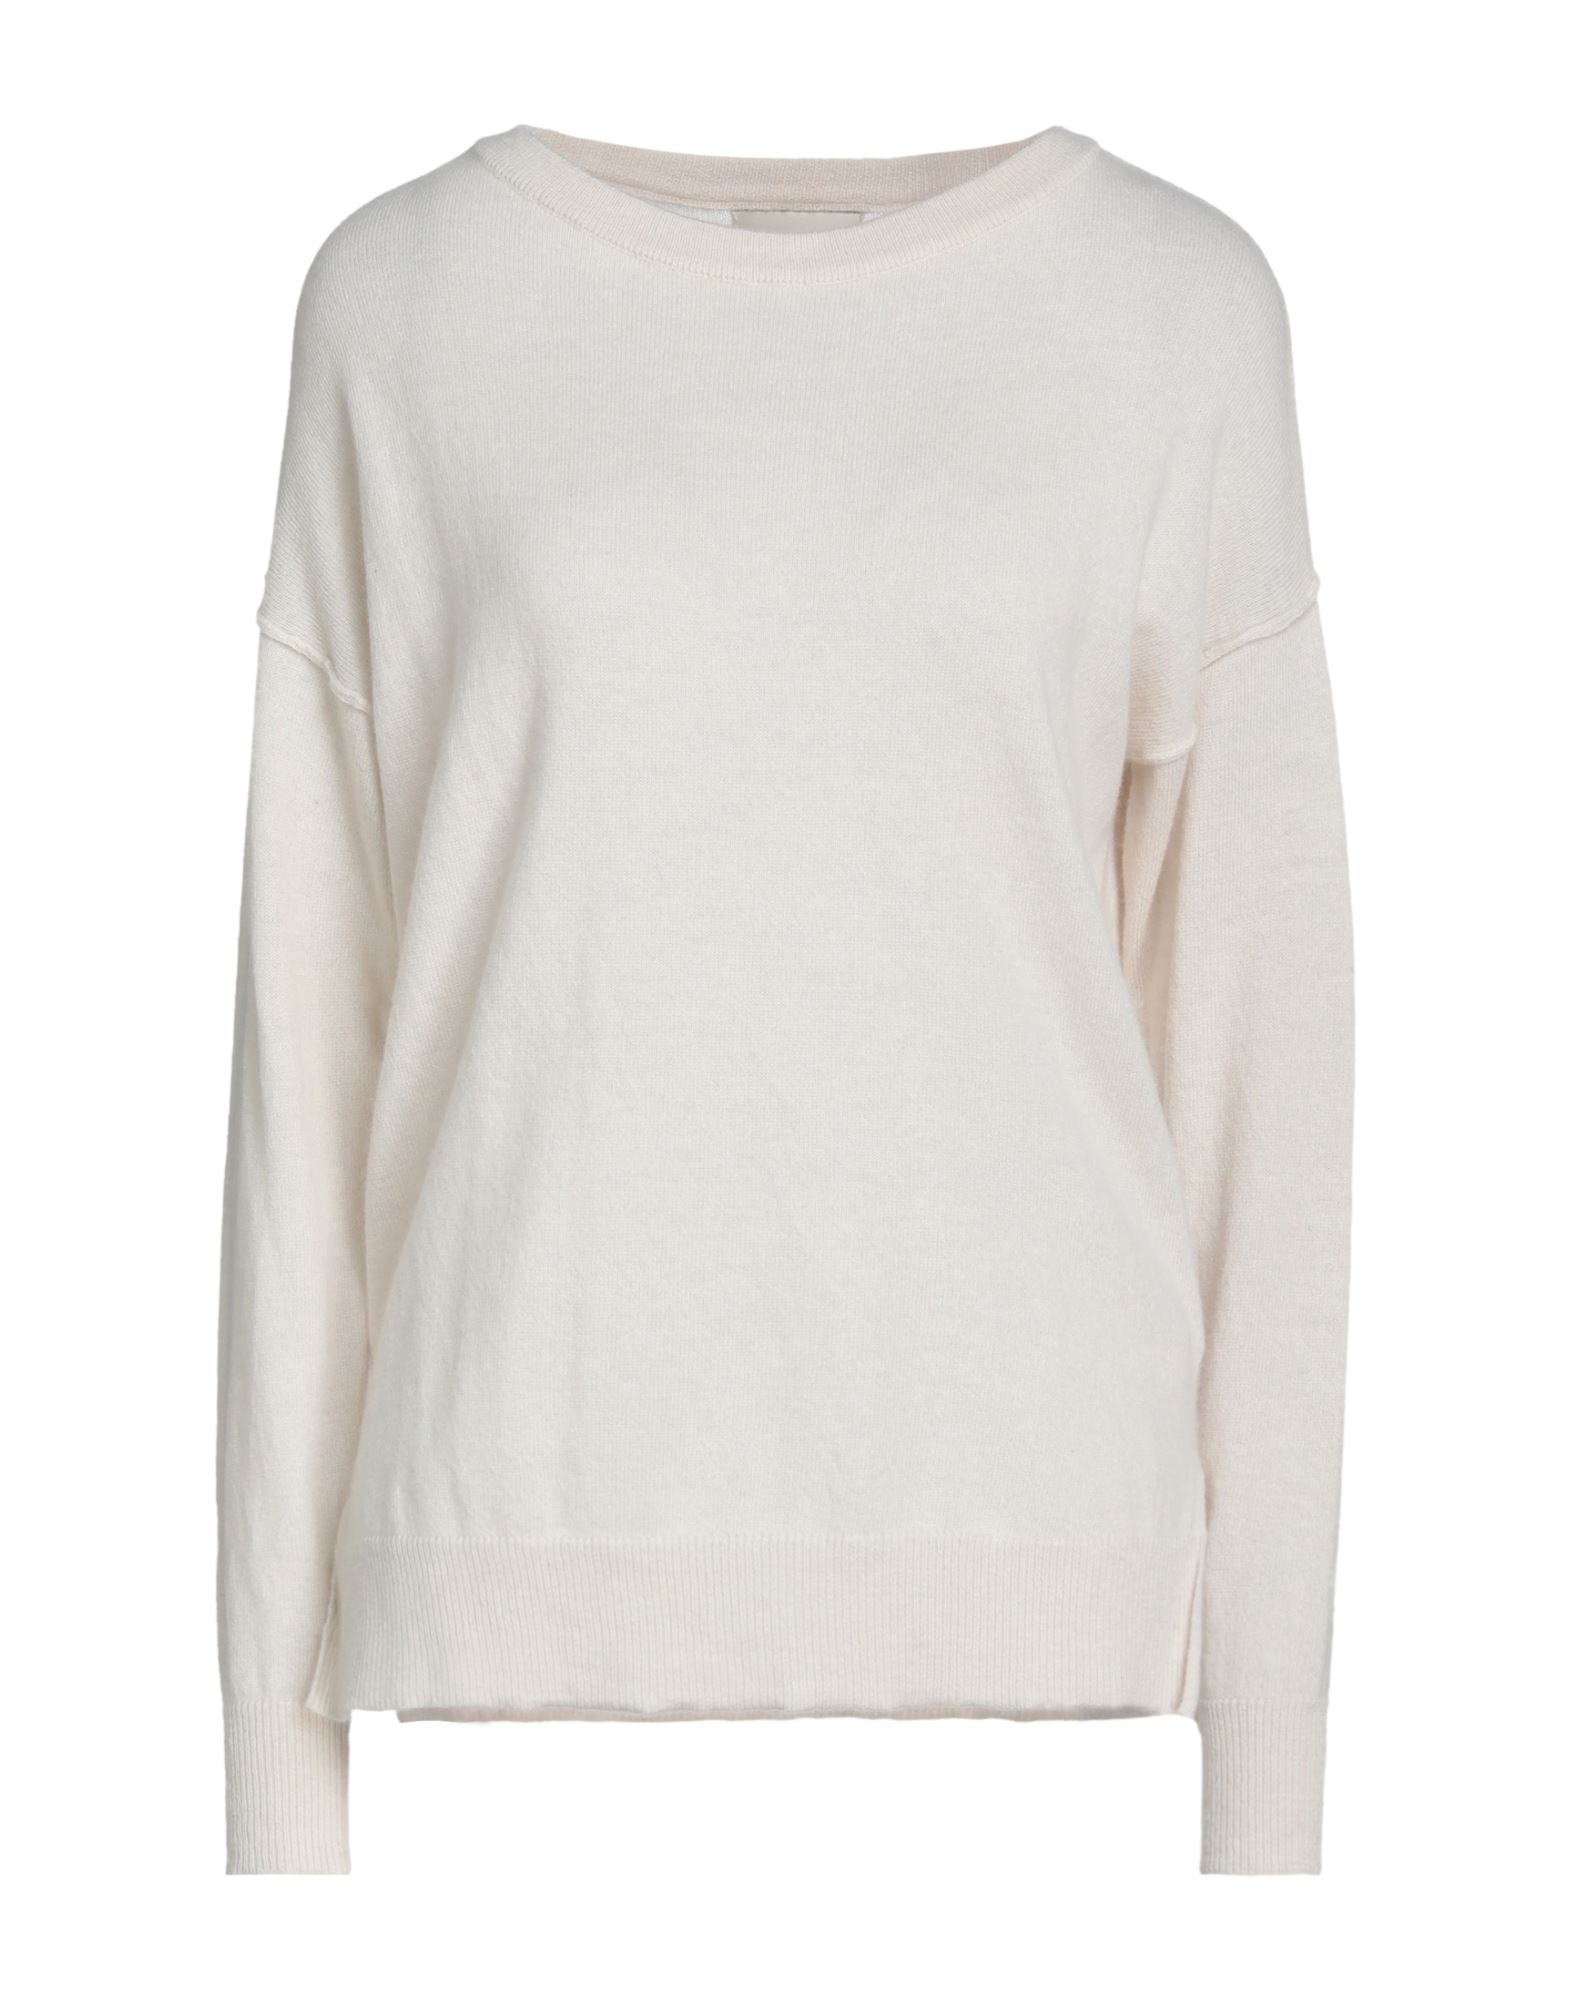 N.o.w. Andrea Rosati Cashmere Sweaters In White